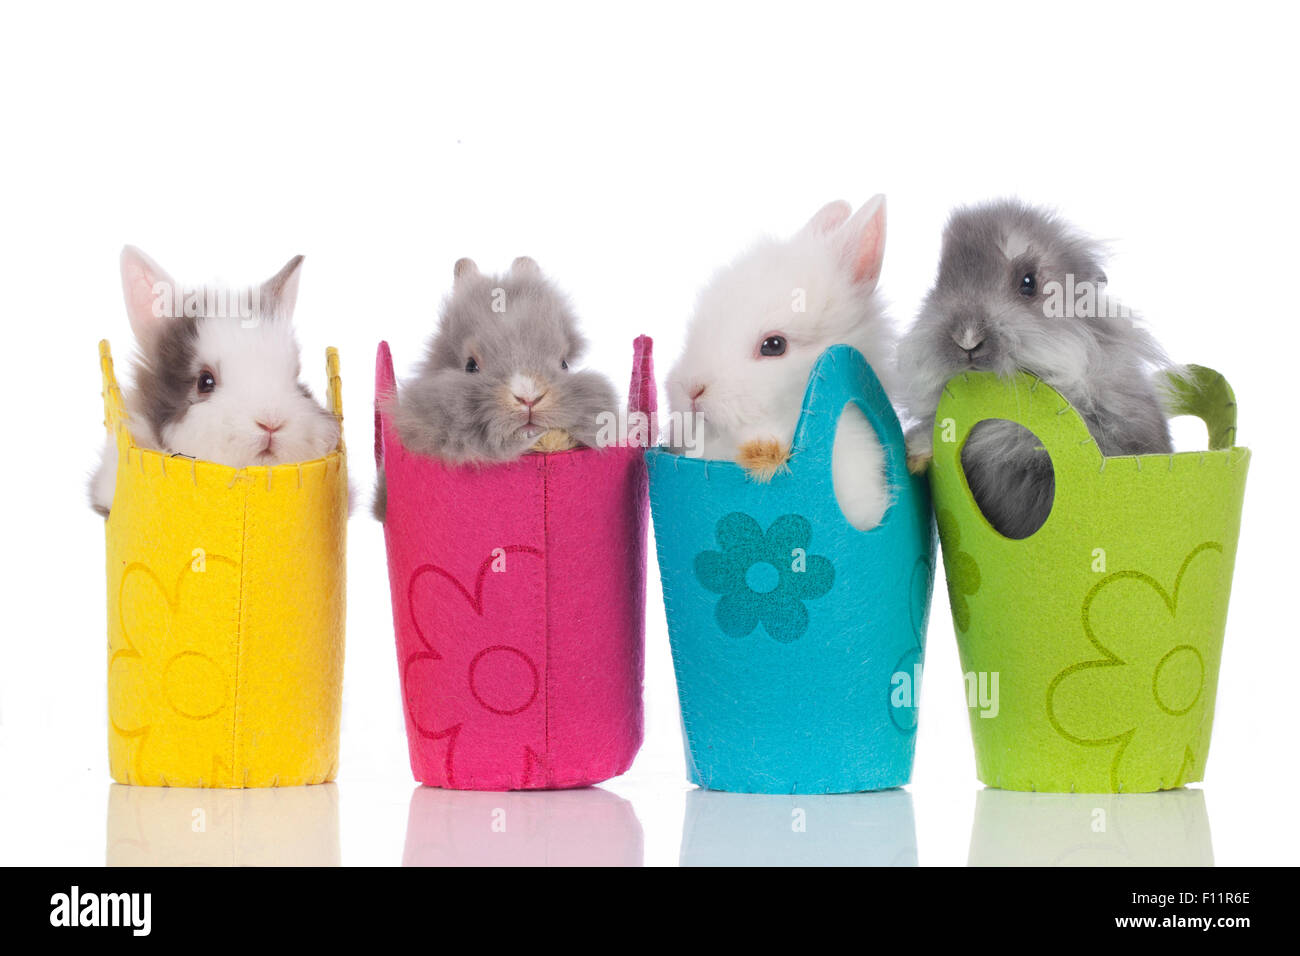 Coniglio nano, Lionhead rabbit quattro singoli sacchetti multicolore Studio immagine contro uno sfondo bianco Foto Stock